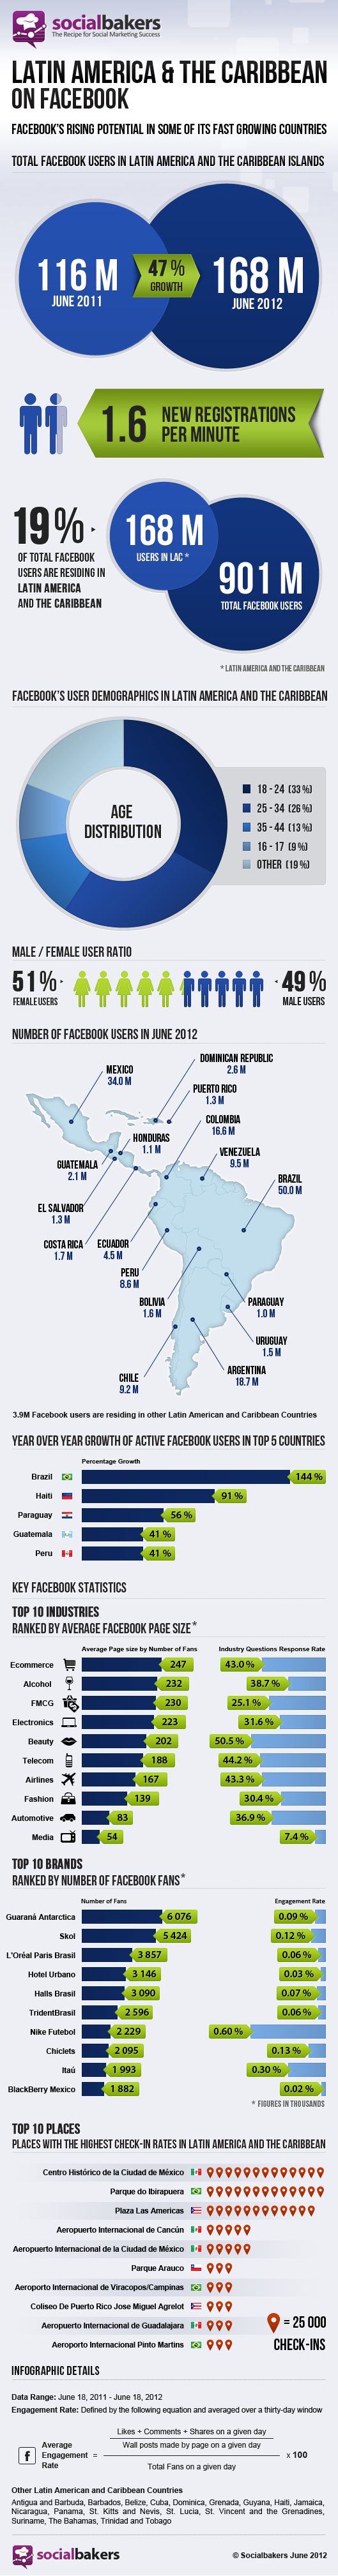 Los números de Facebook en Latinoamérica y el Caribe 1